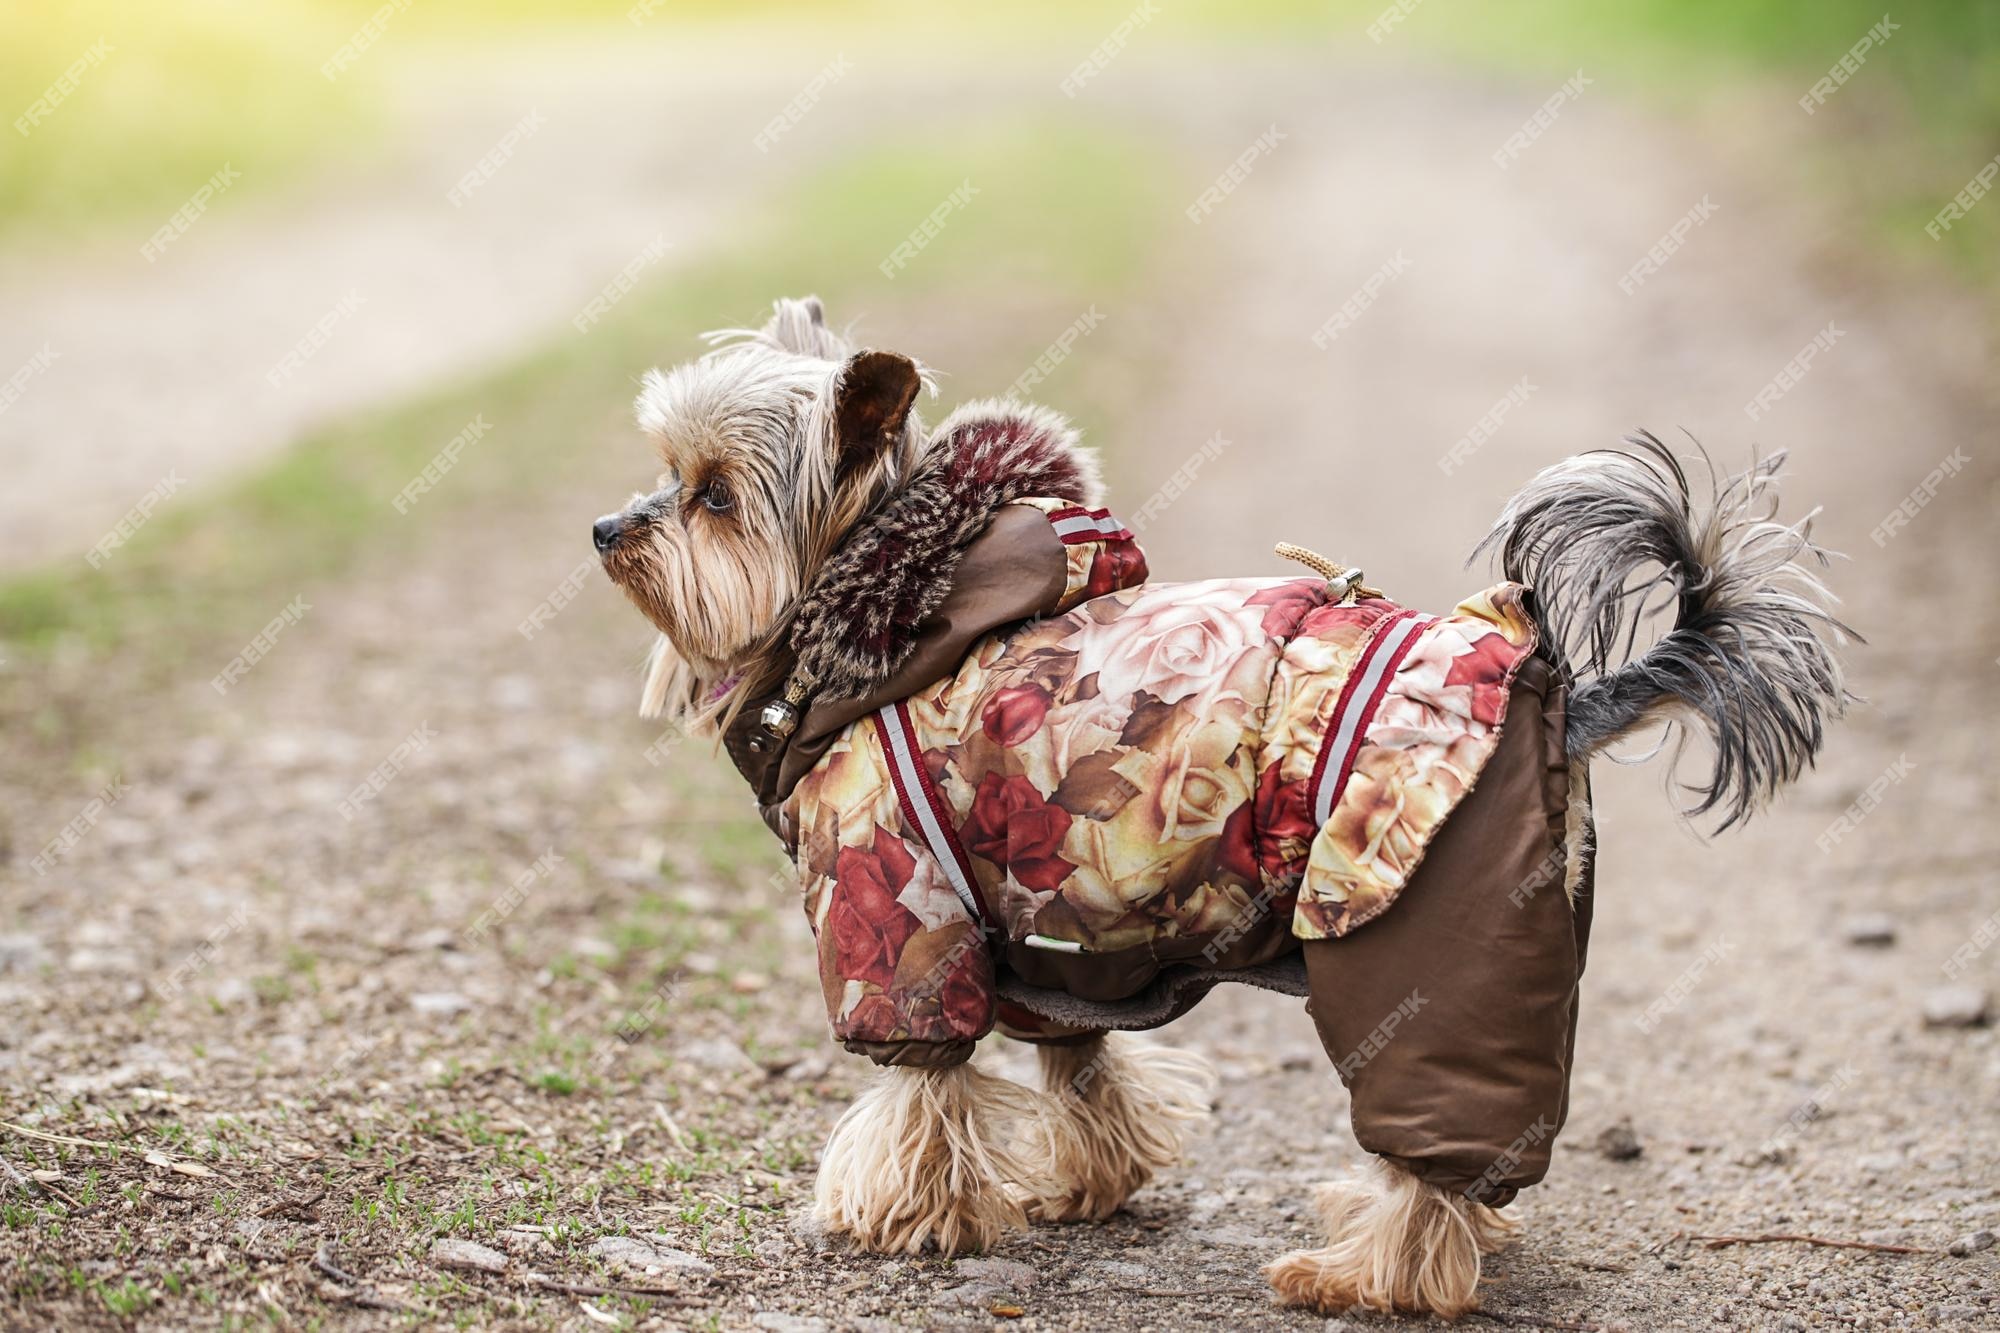 Metro va a decidir Cuerpo Sudadera con capucha de piel abrigos para perros pequeños para invierno  ropa para mascotas chaqueta yorkshire terrier perro al aire libre | Foto  Premium